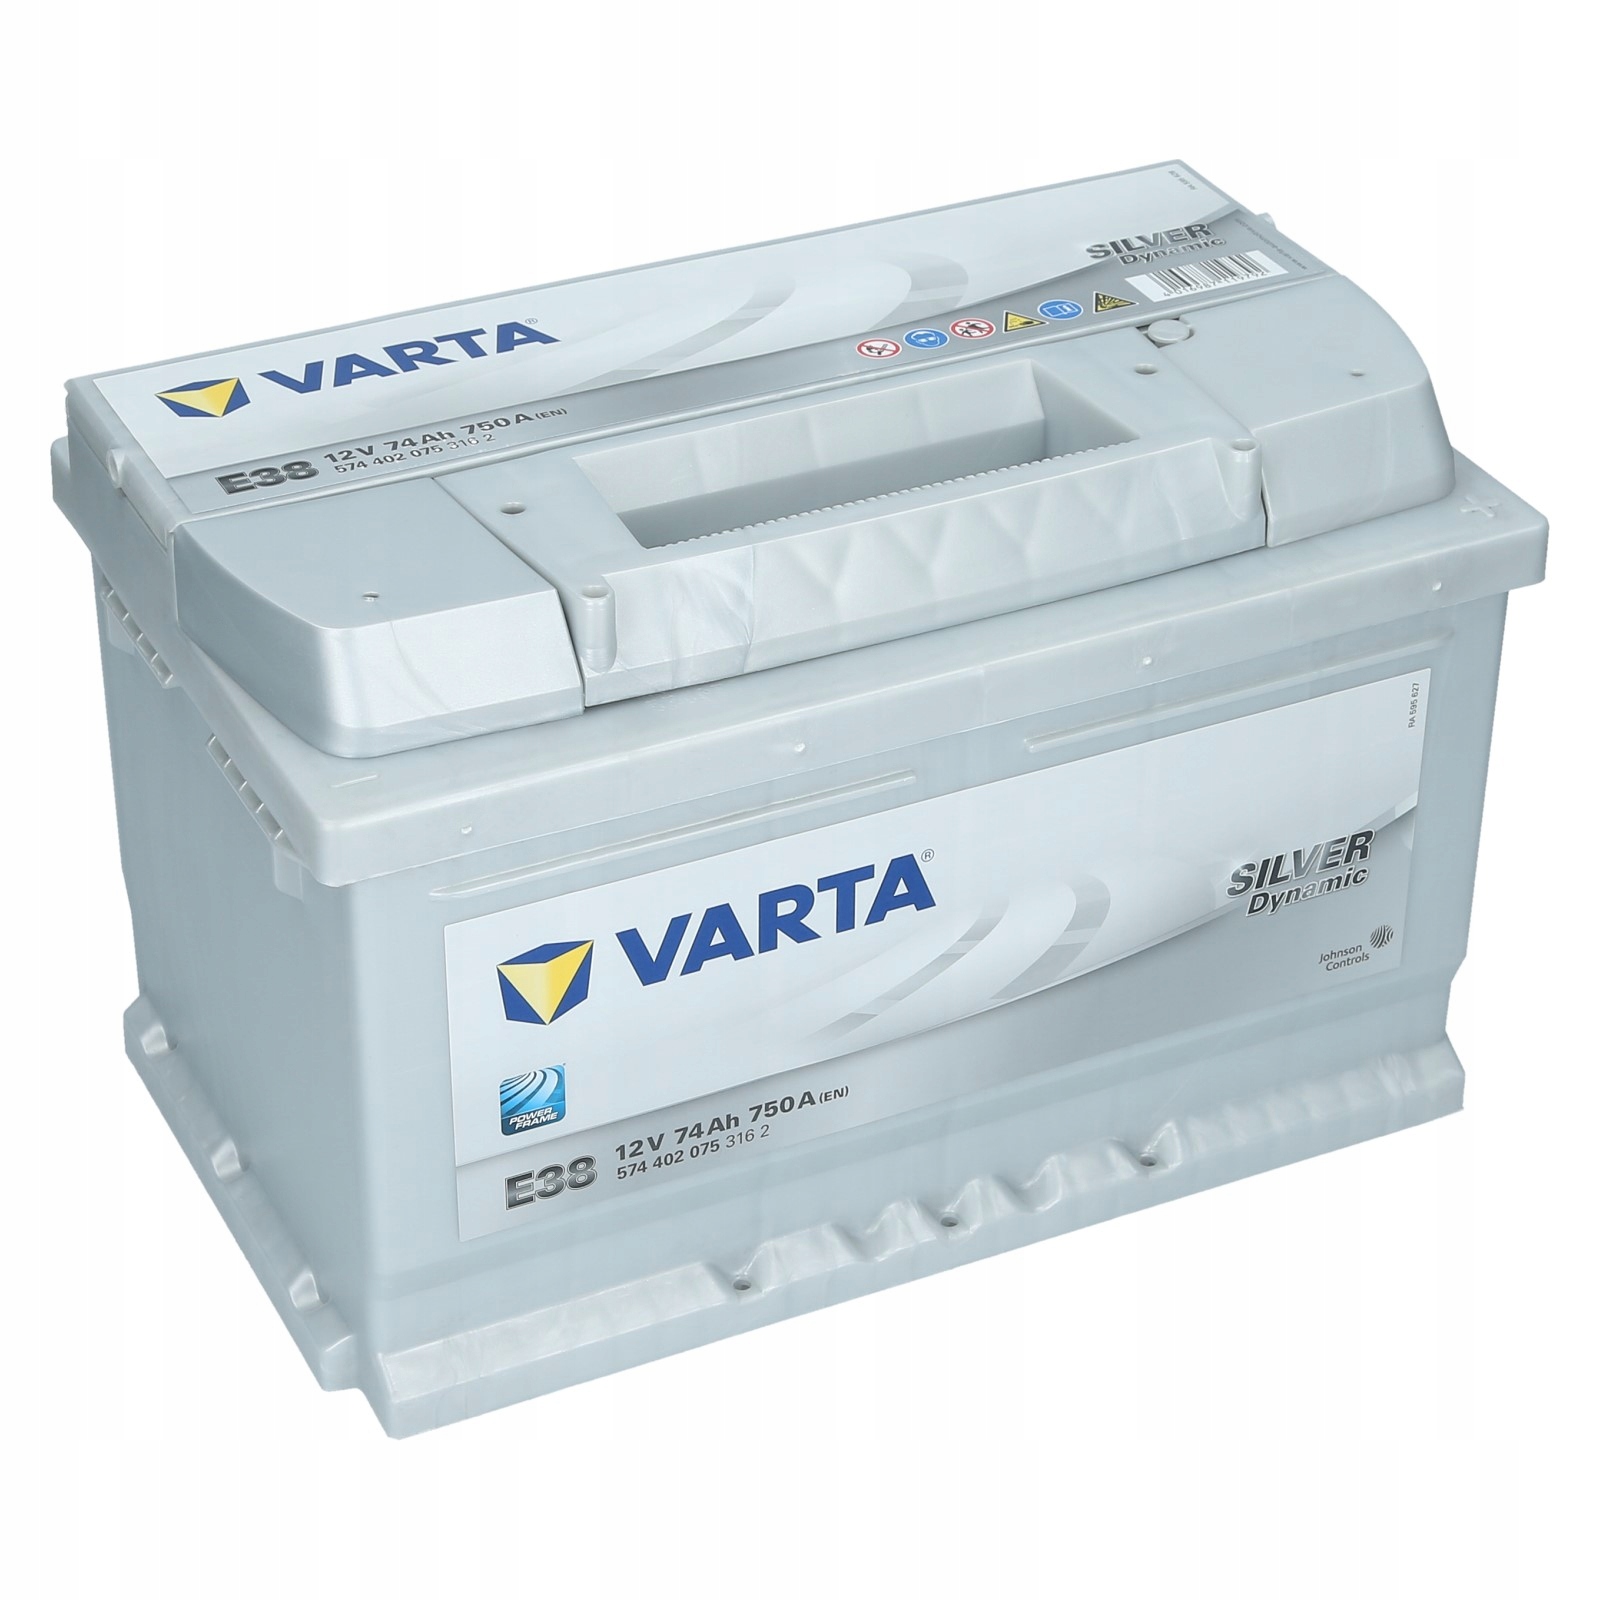 Varta Silver 12V 74AH 750A E38 278x175x175mm